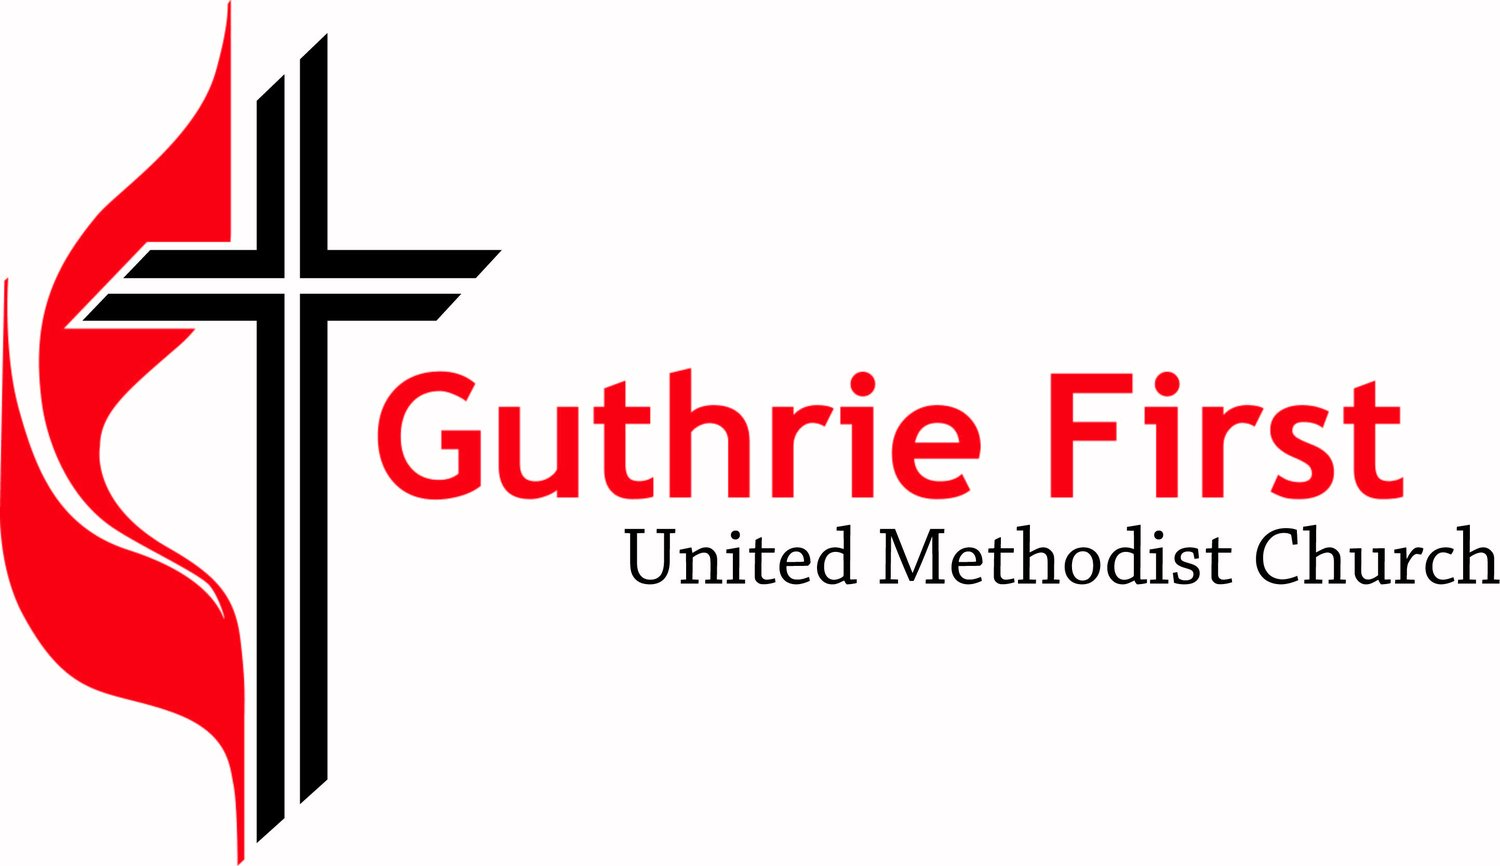 Guthrie First United Methodist Church